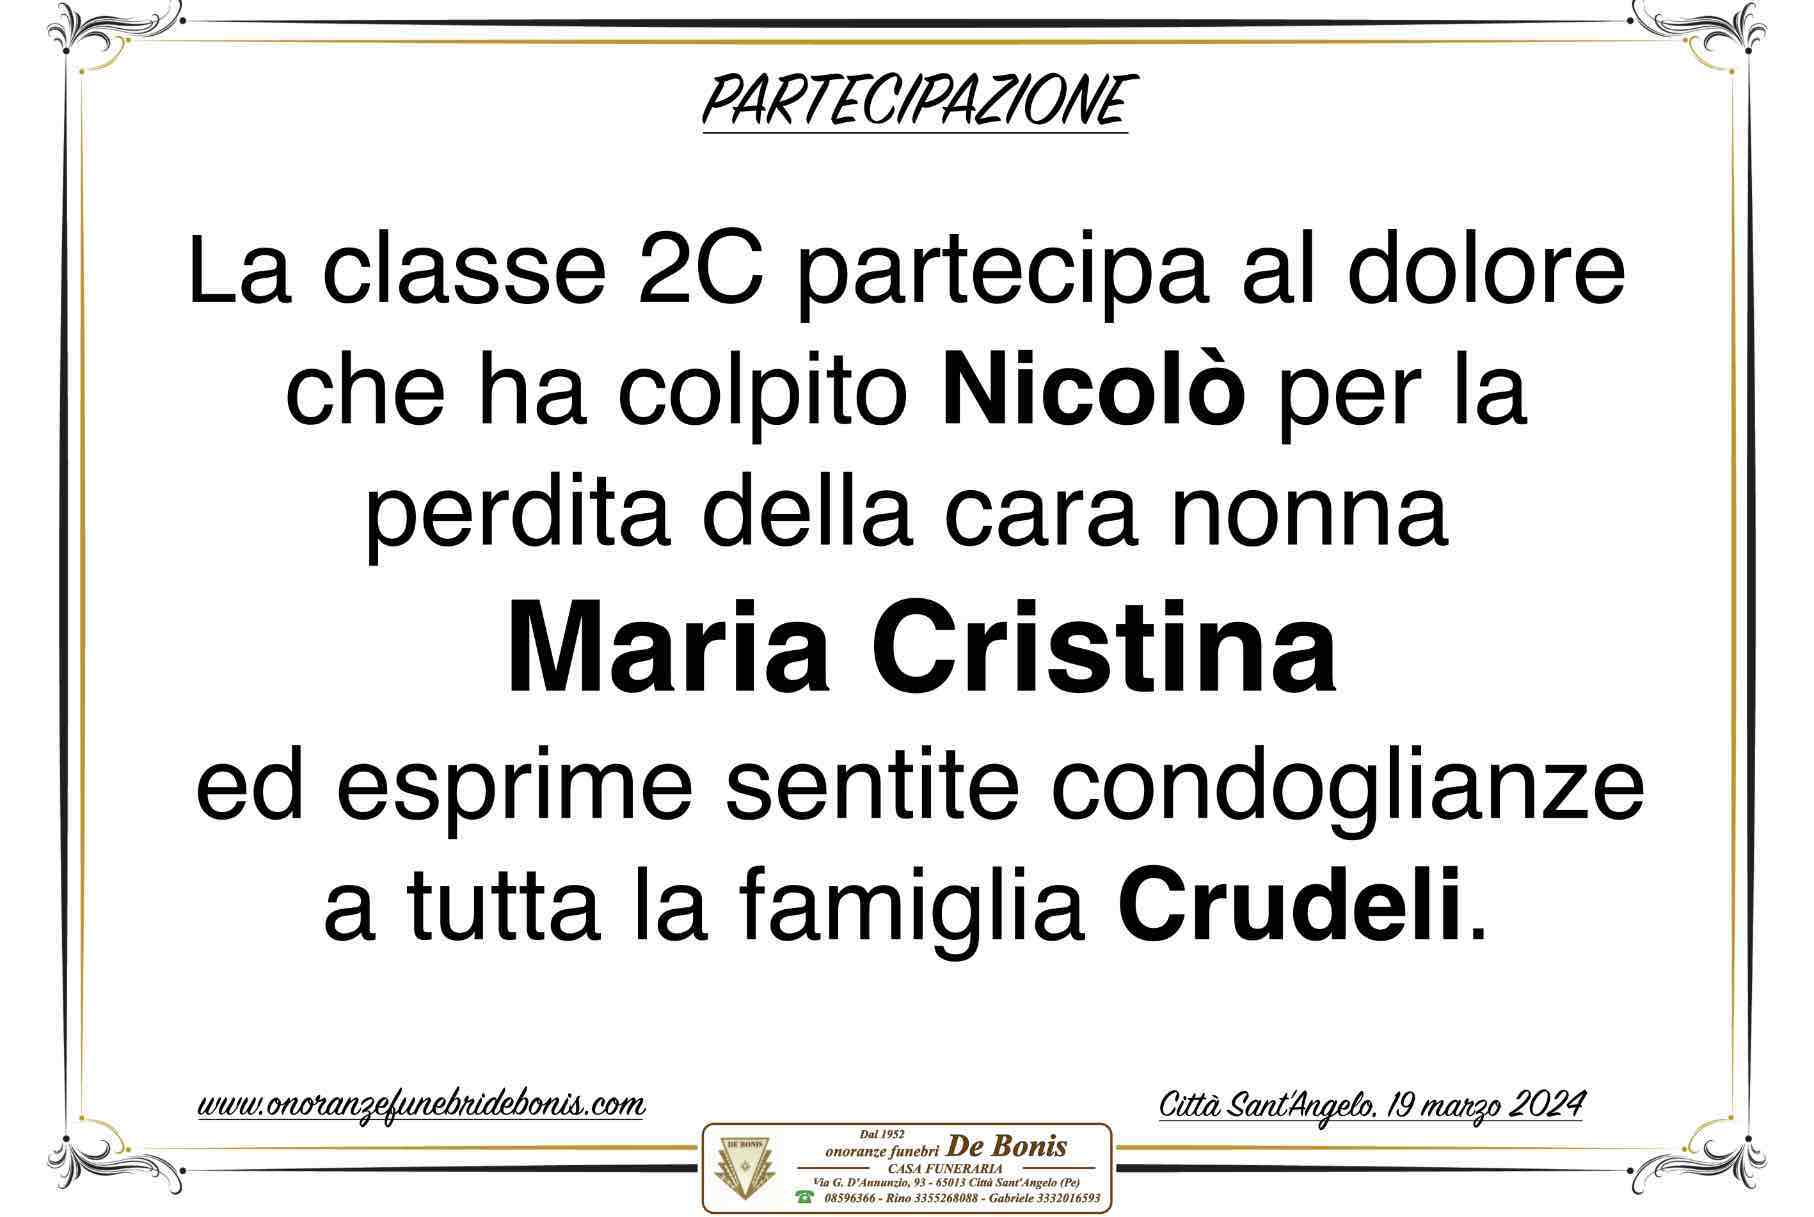 Maria Cristina Petti